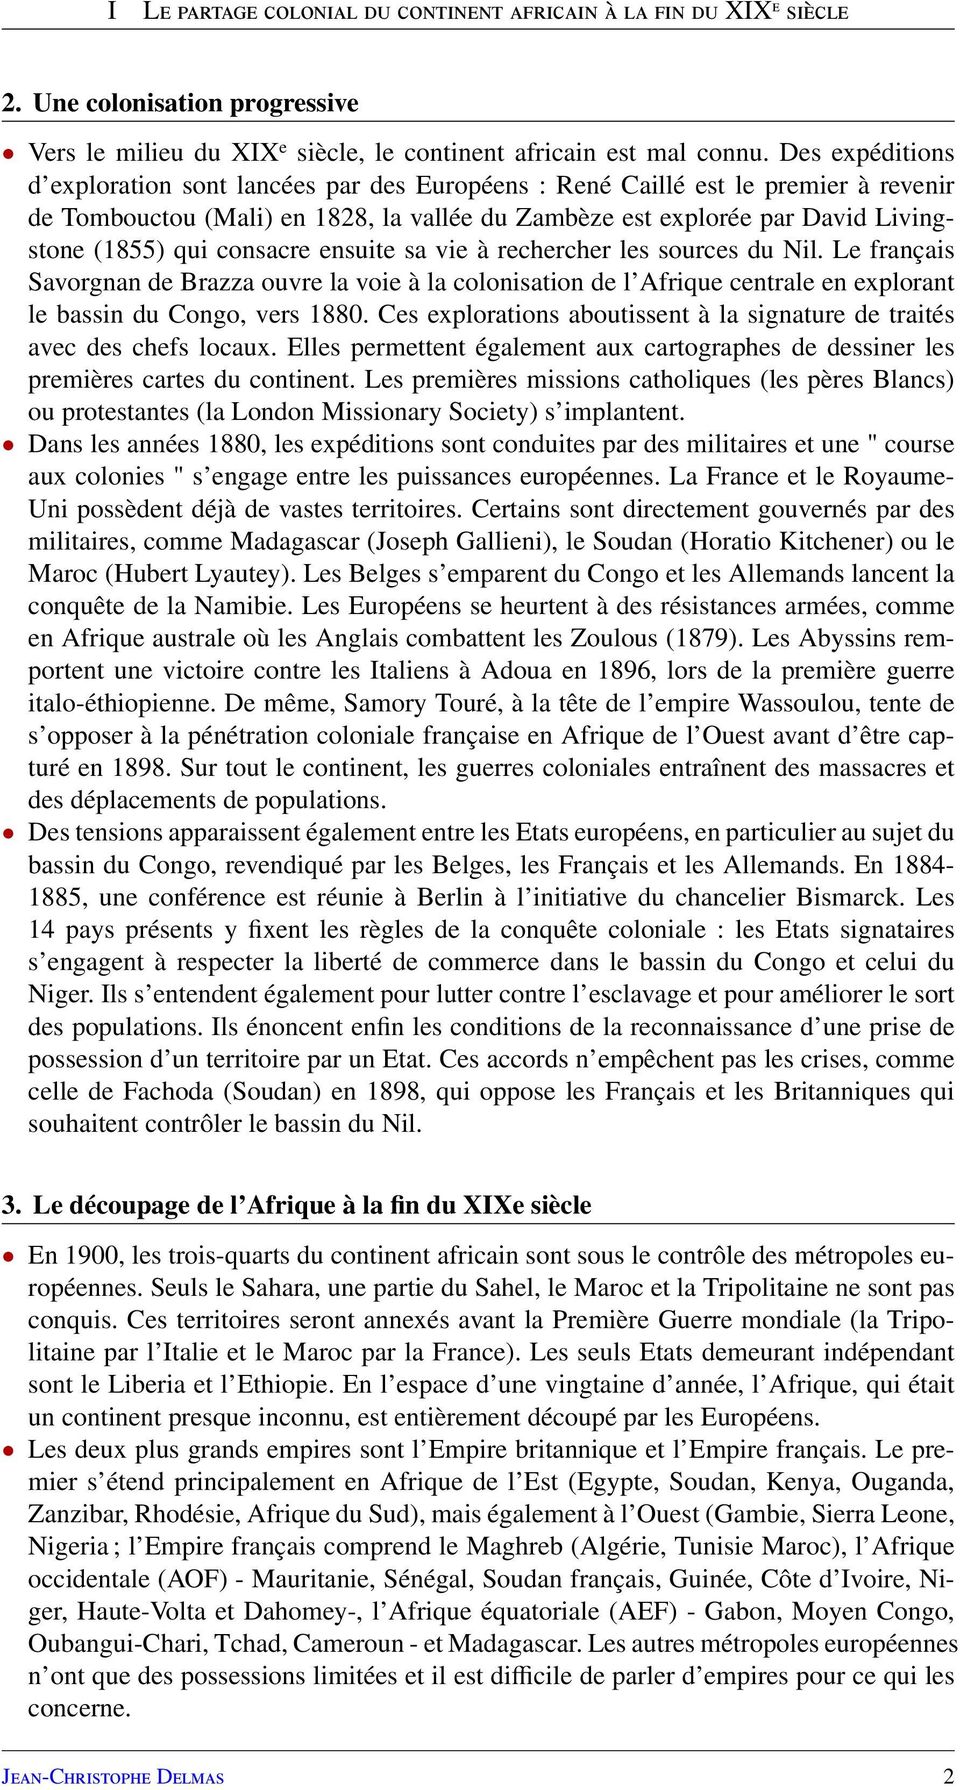 consacre ensuite sa vie à rechercher les sources du Nil. Le français Savorgnan de Brazza ouvre la voie à la colonisation de l Afrique centrale en explorant le bassin du Congo, vers 1880.